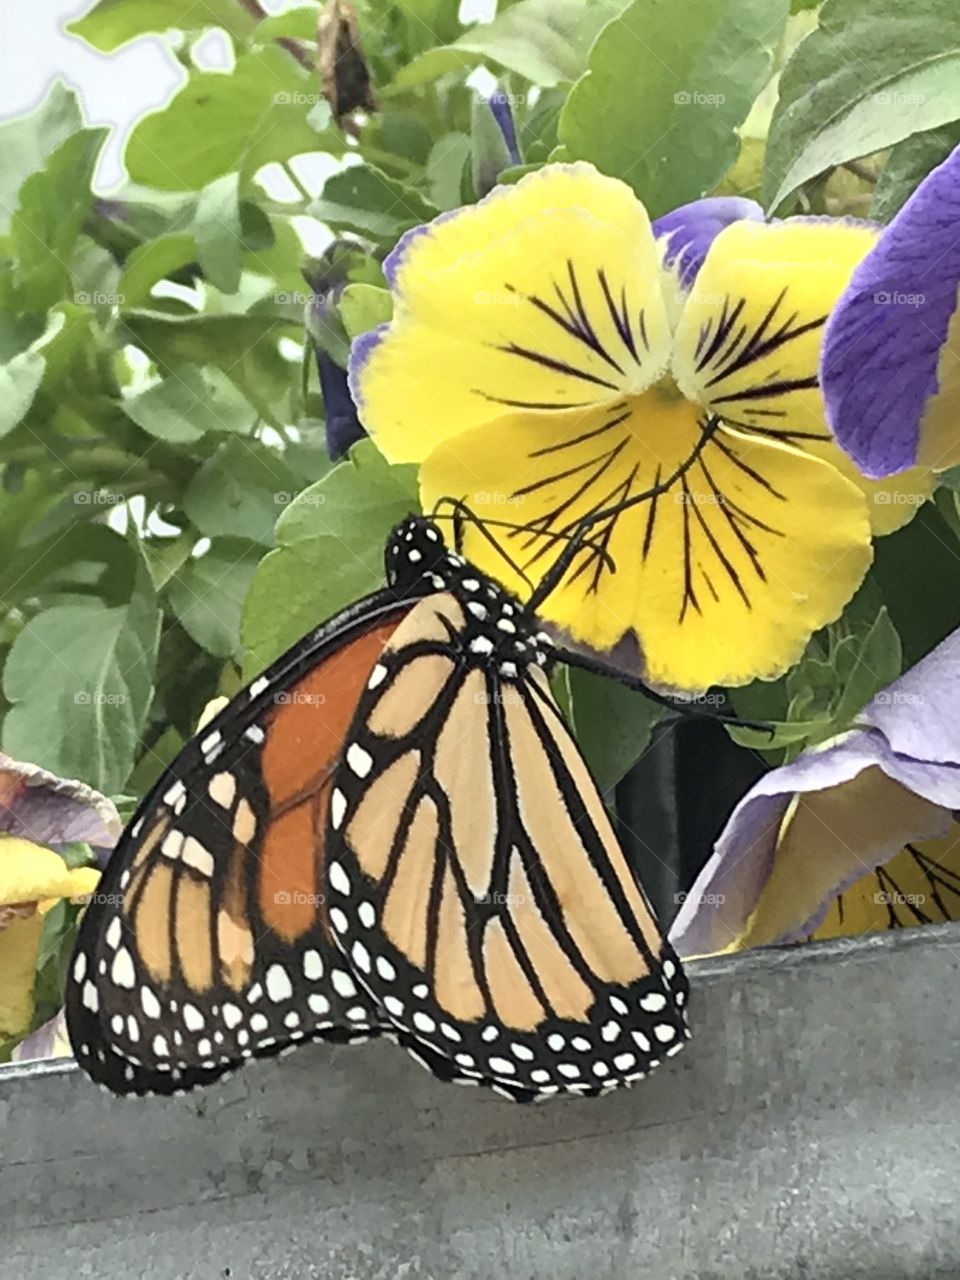 Butterfly lunch break